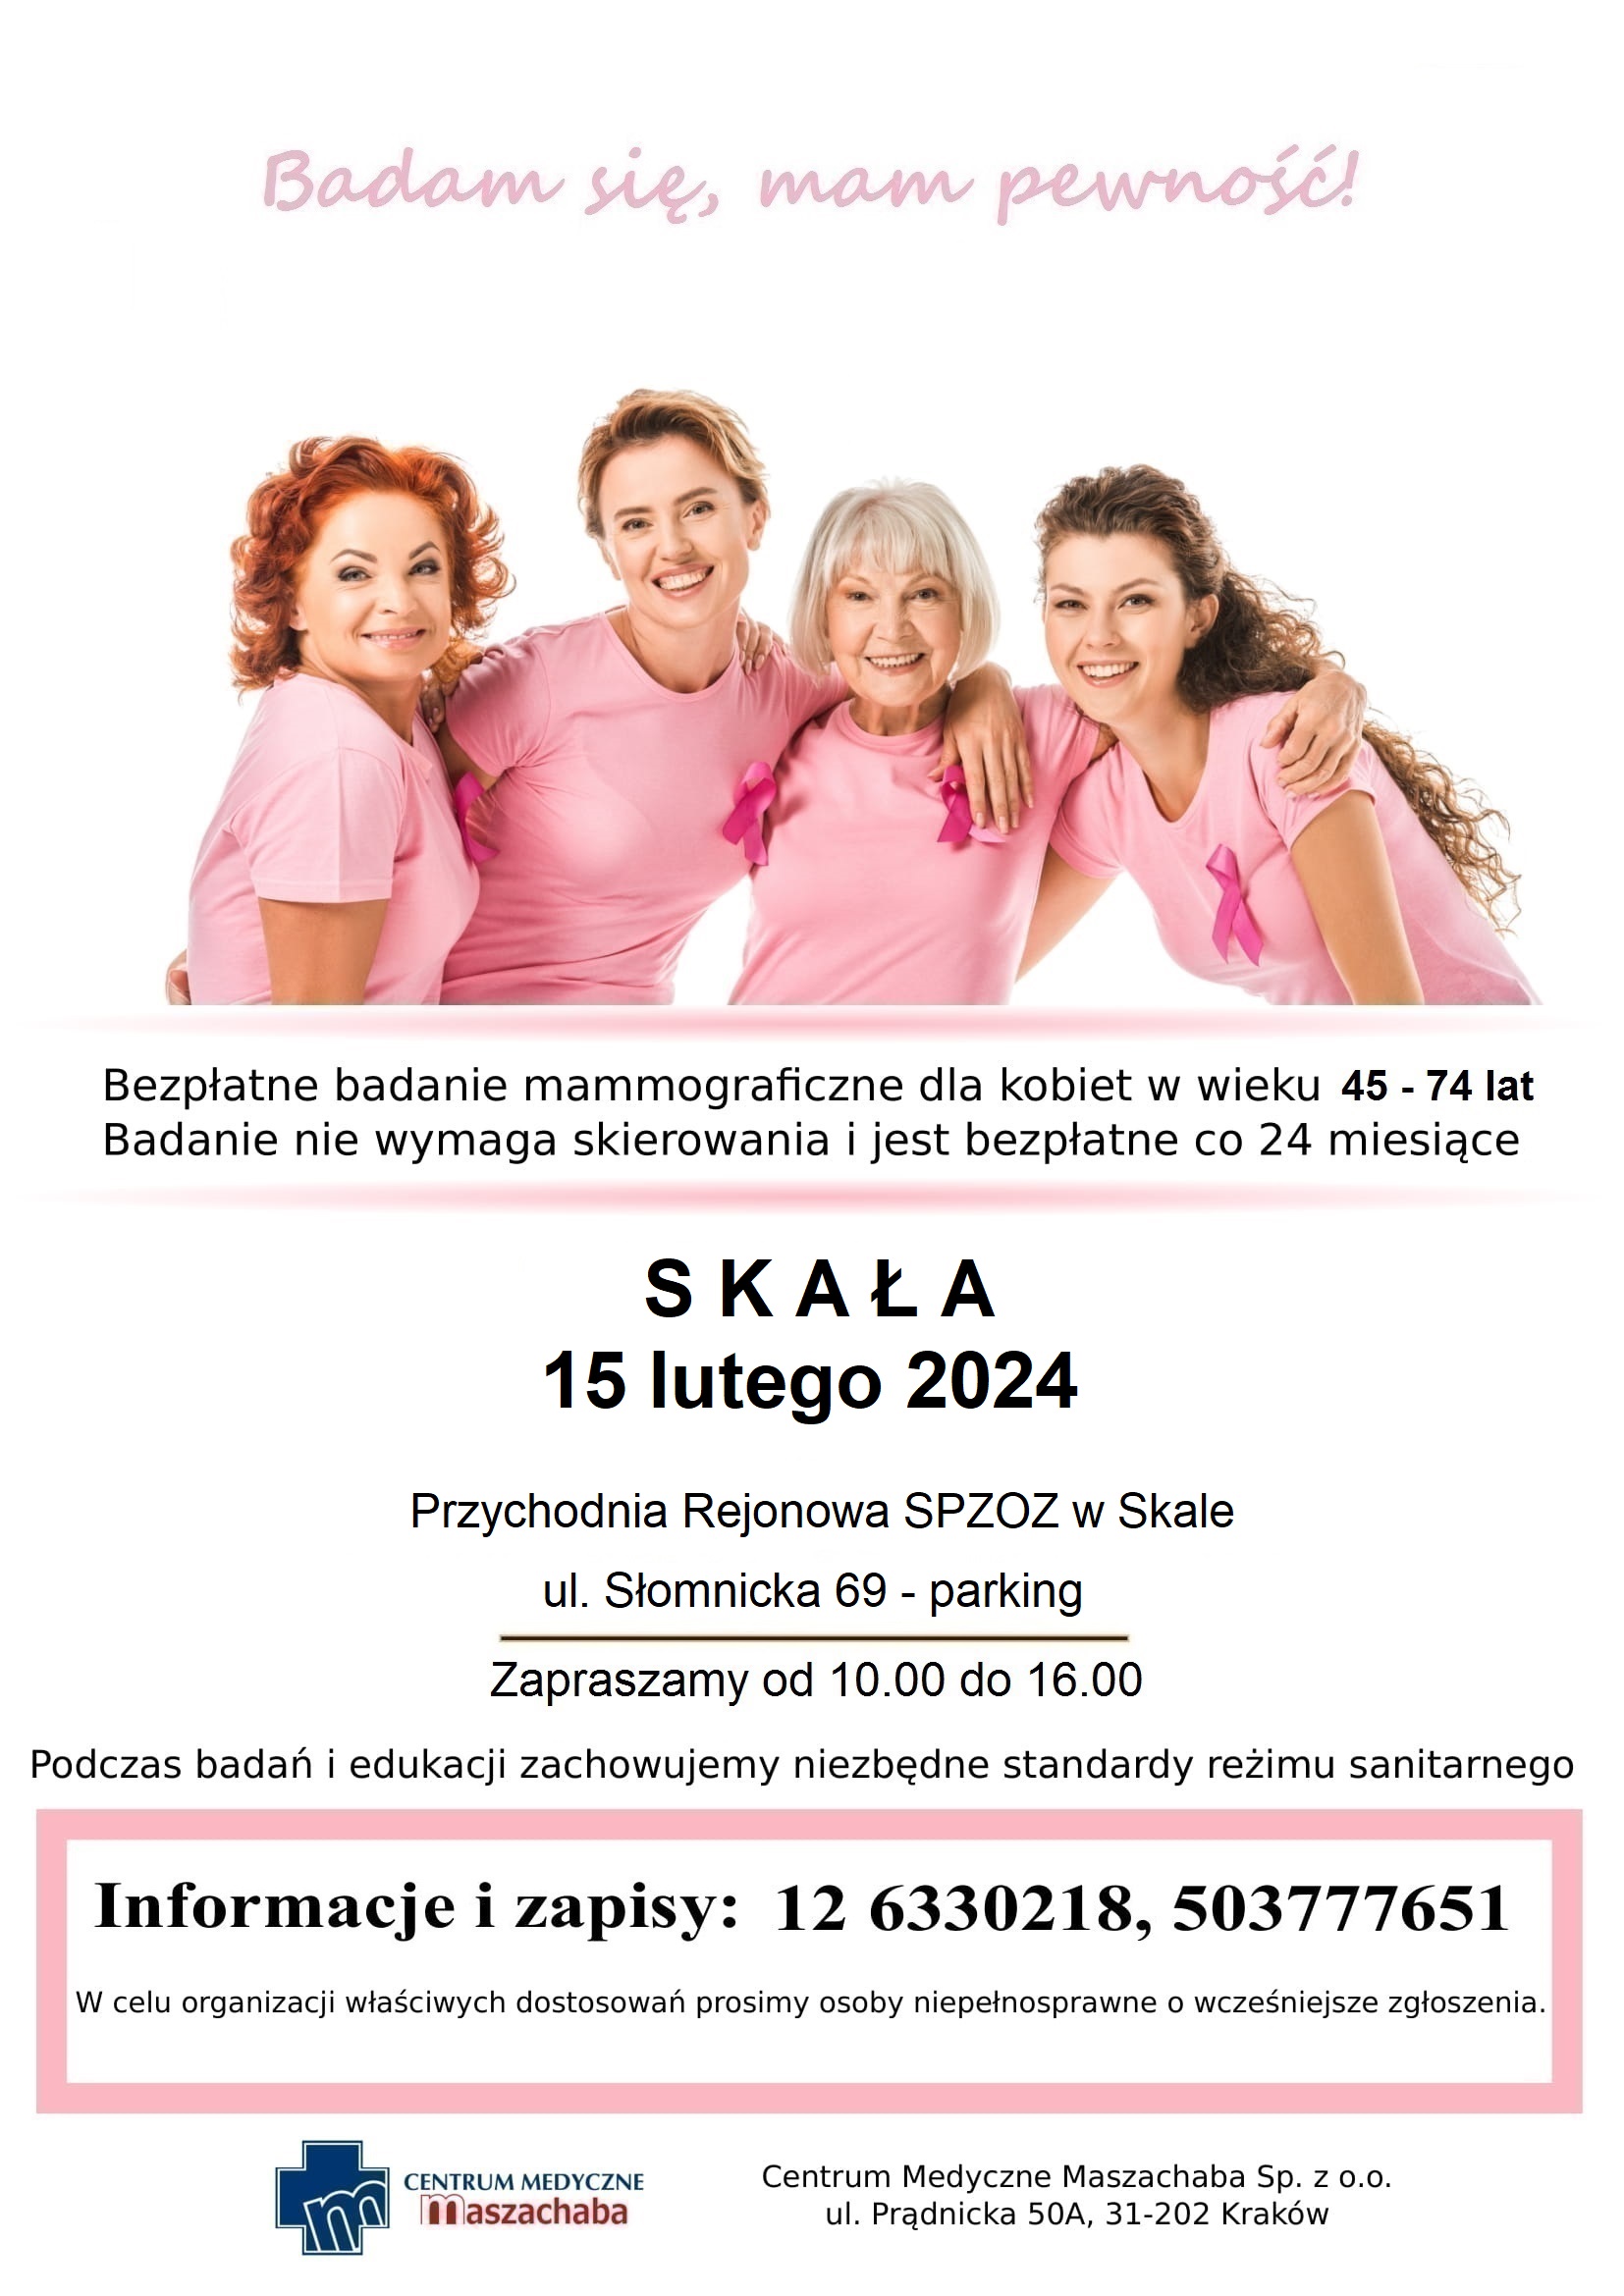 Bezpłątne badanie mammograficzne dla kobiet w wieku 45-74 lata